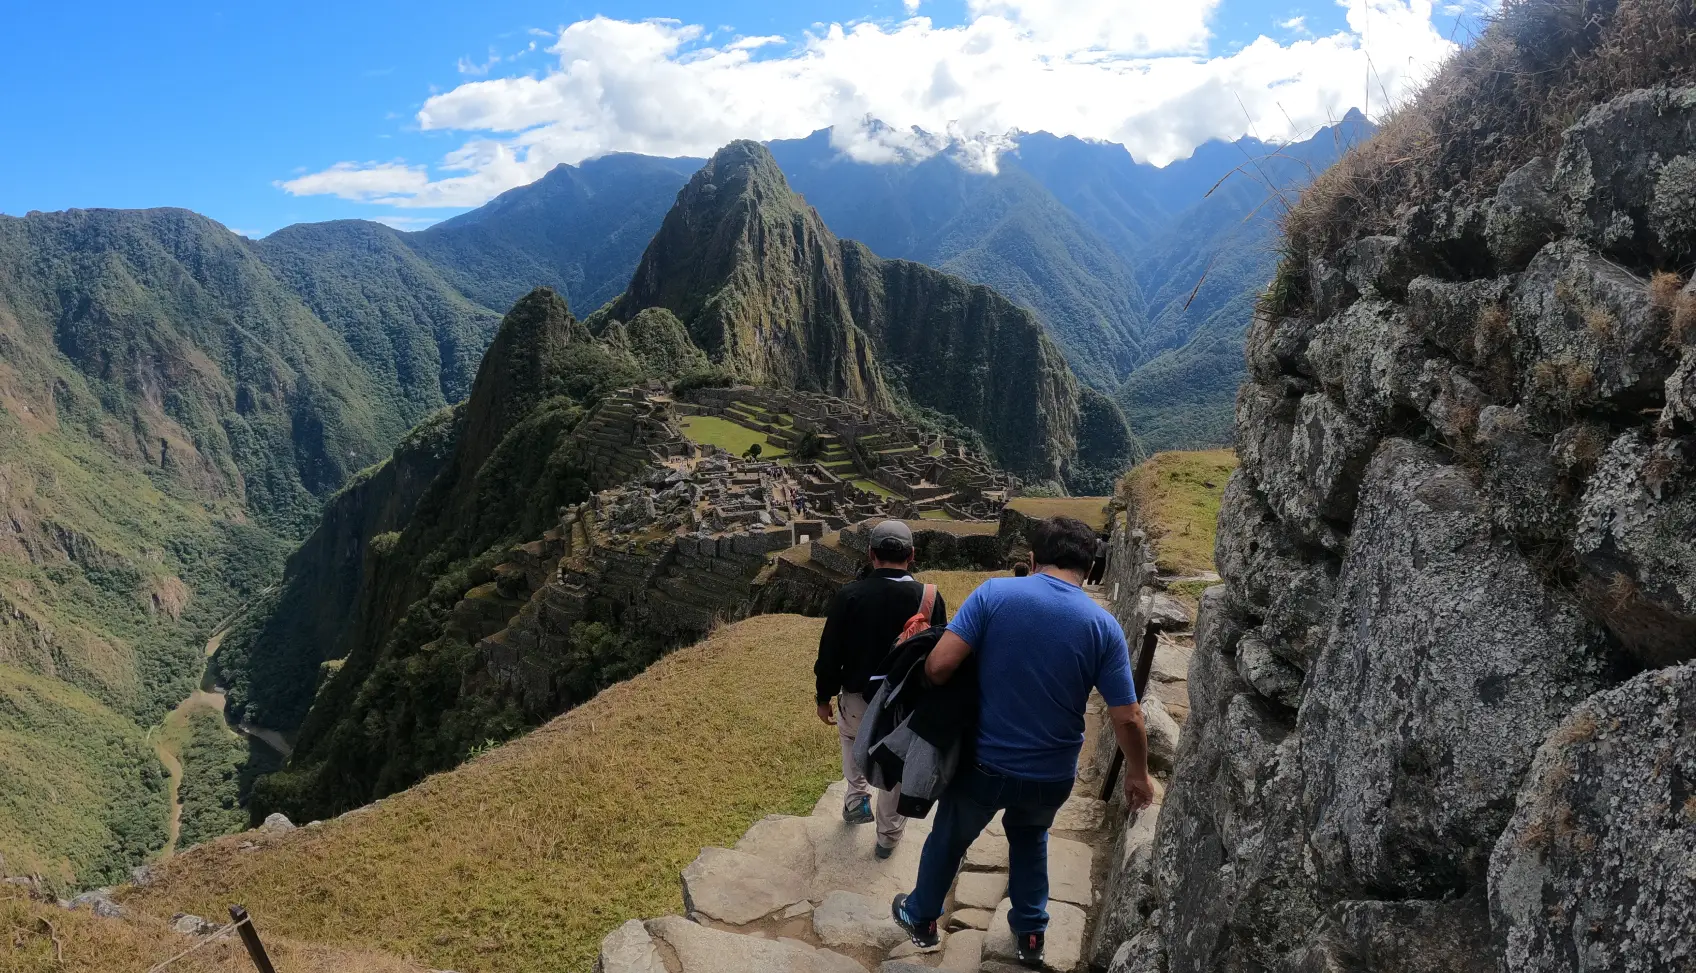 Guía Para Viajar con poco presupuesto a Machu Picchu: Consejos y Precios